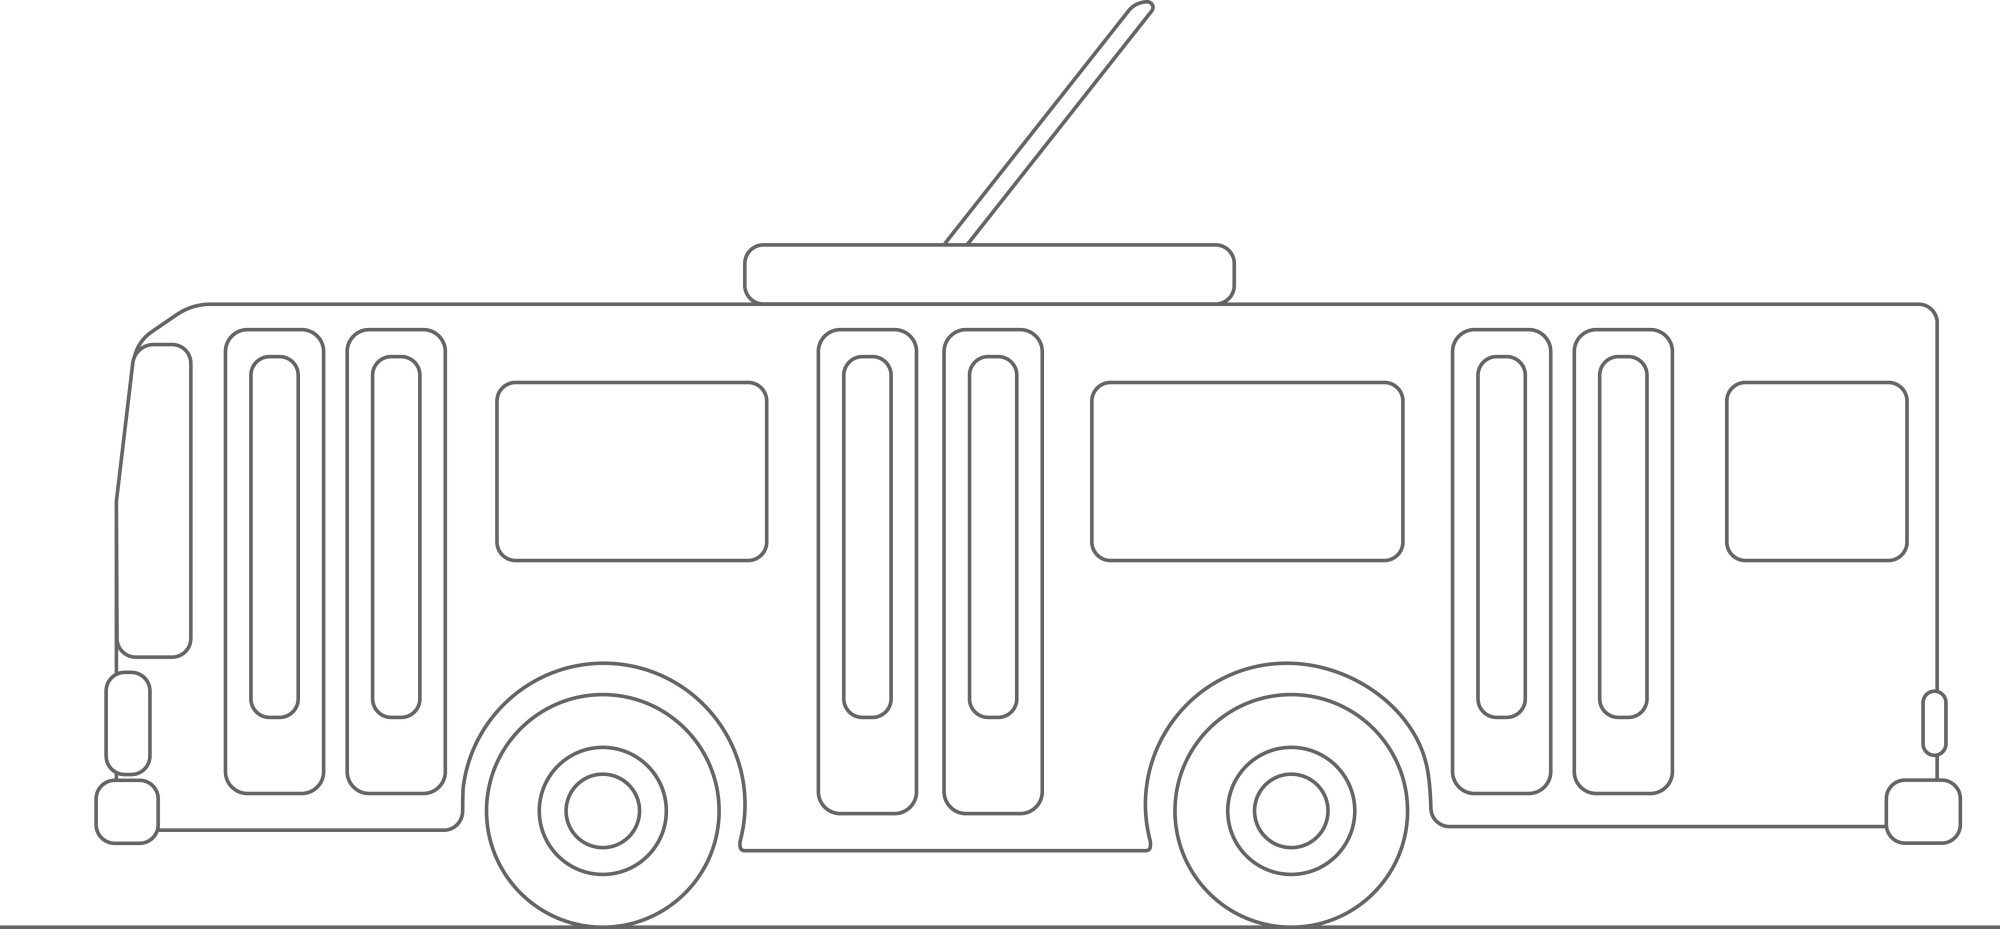 Раскраска для детей: мультяшный троллейбус